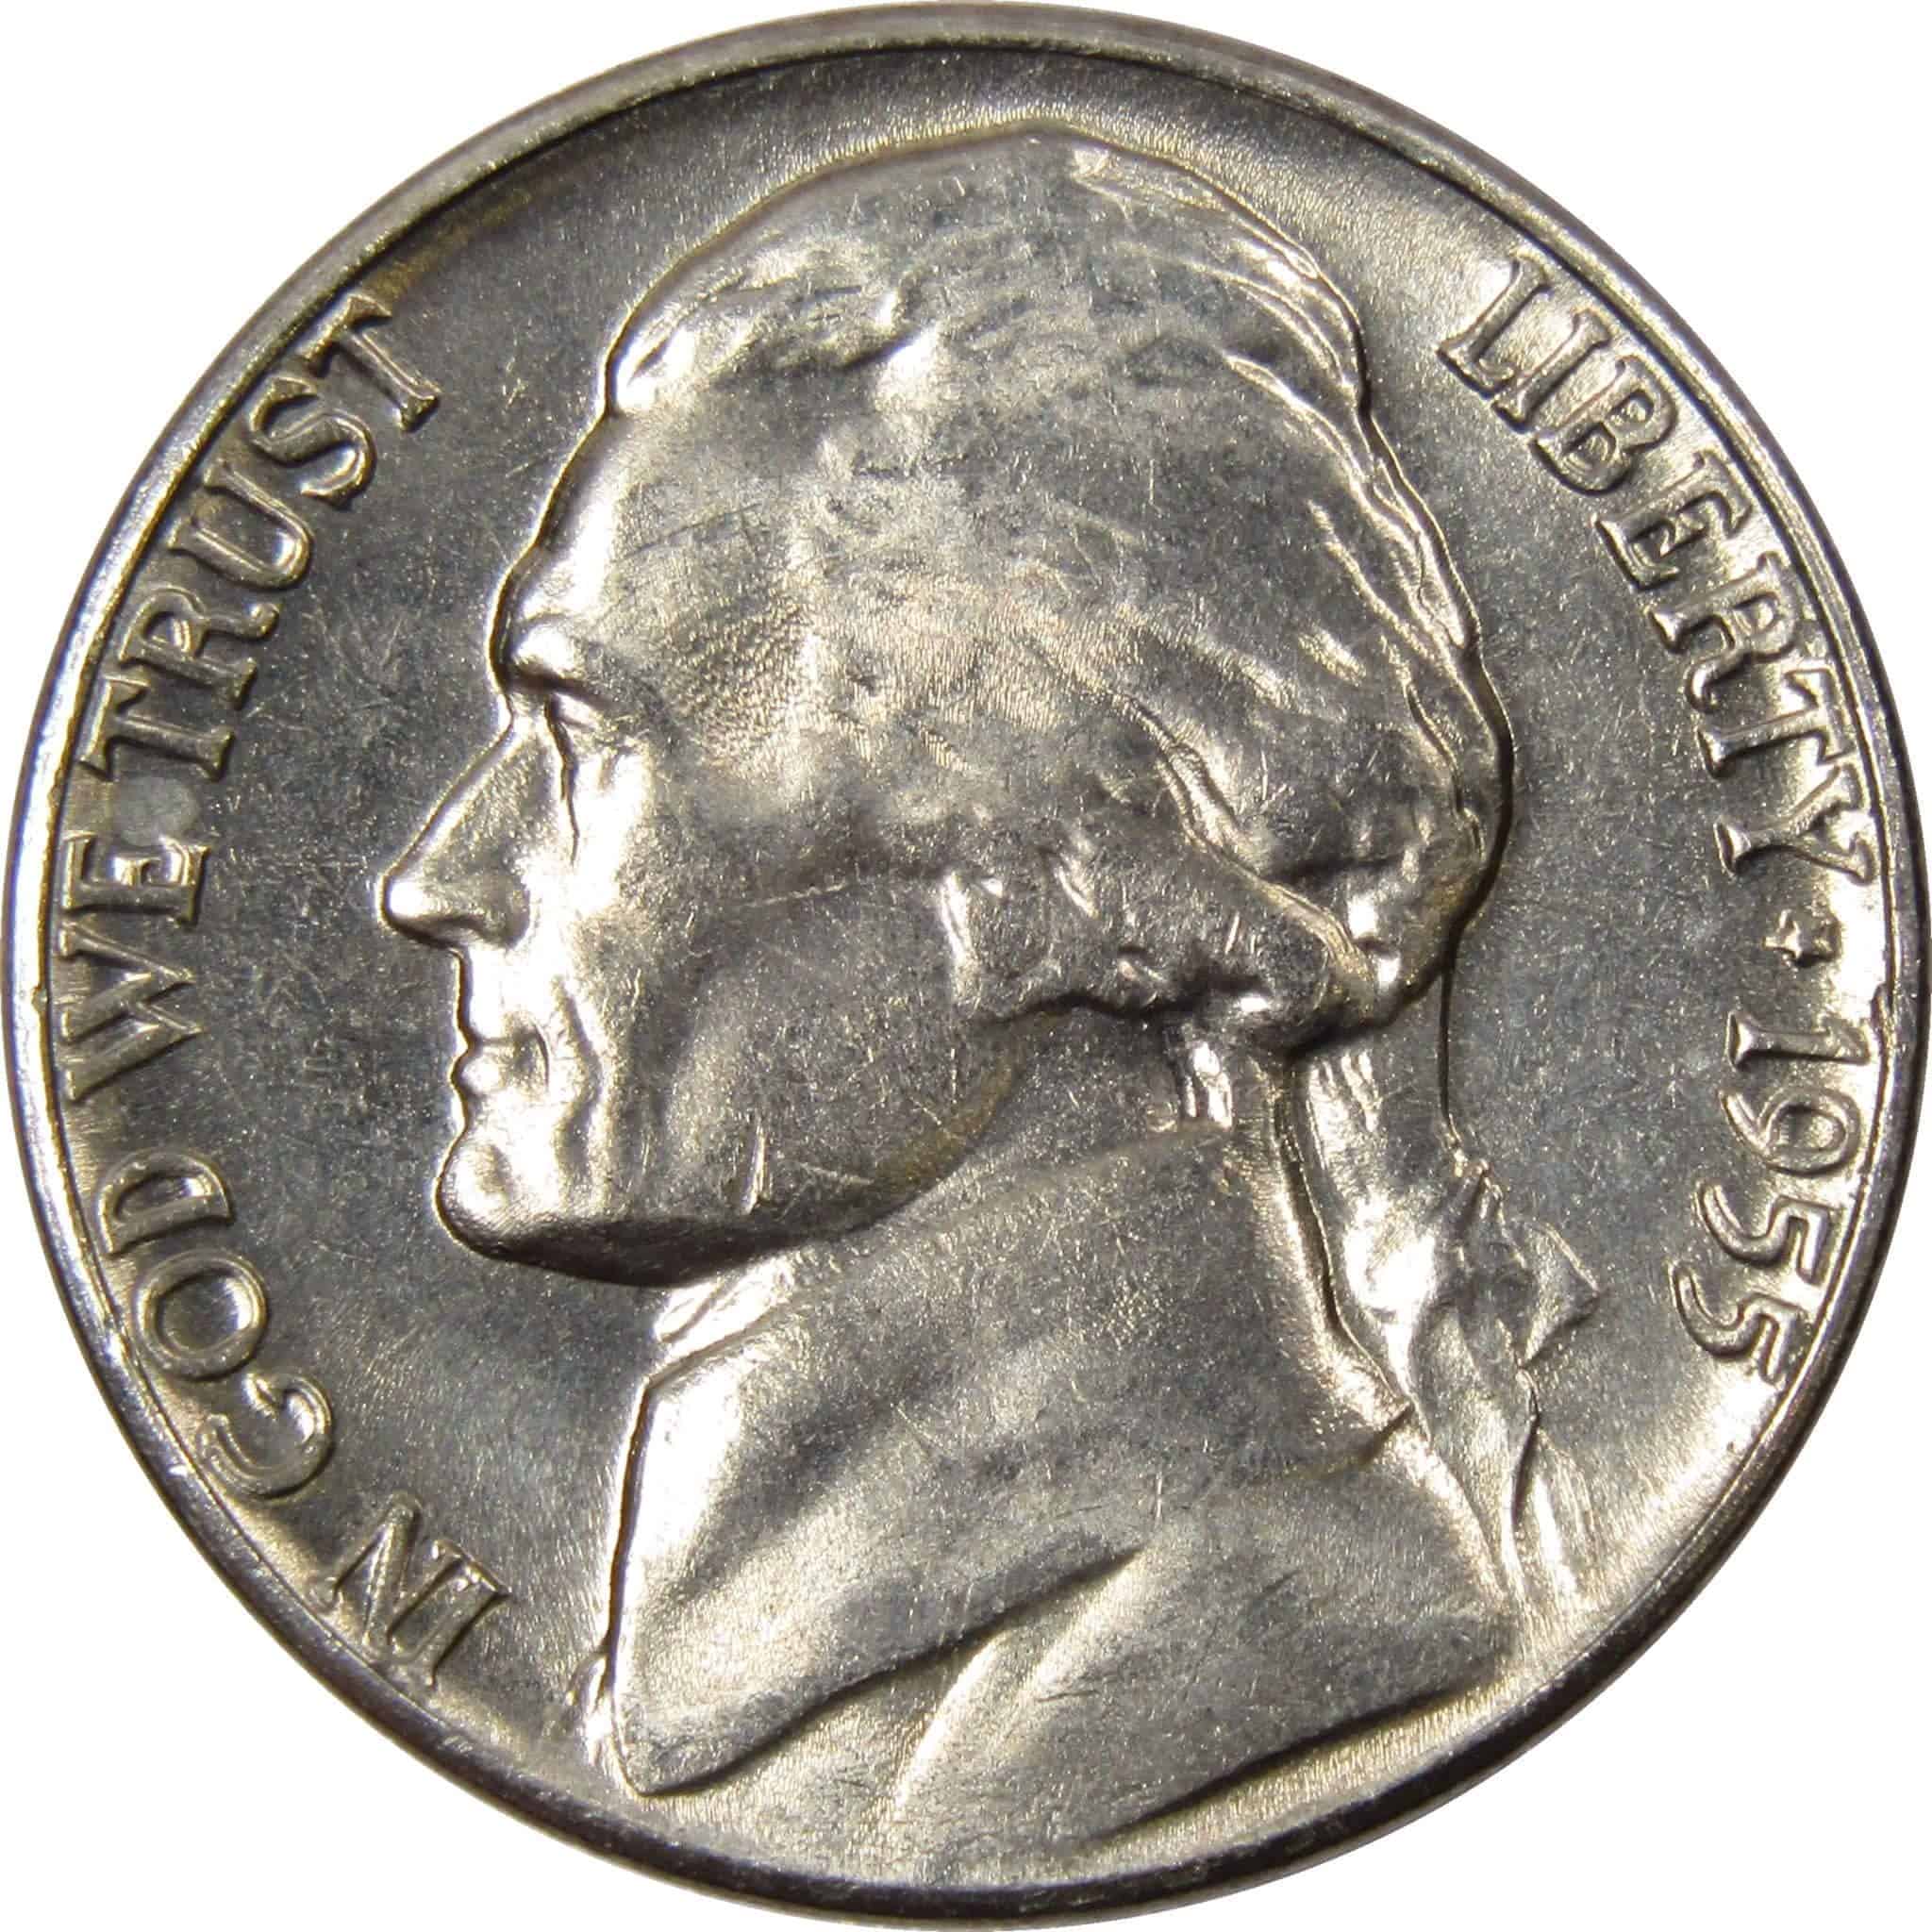 1955 nickel value